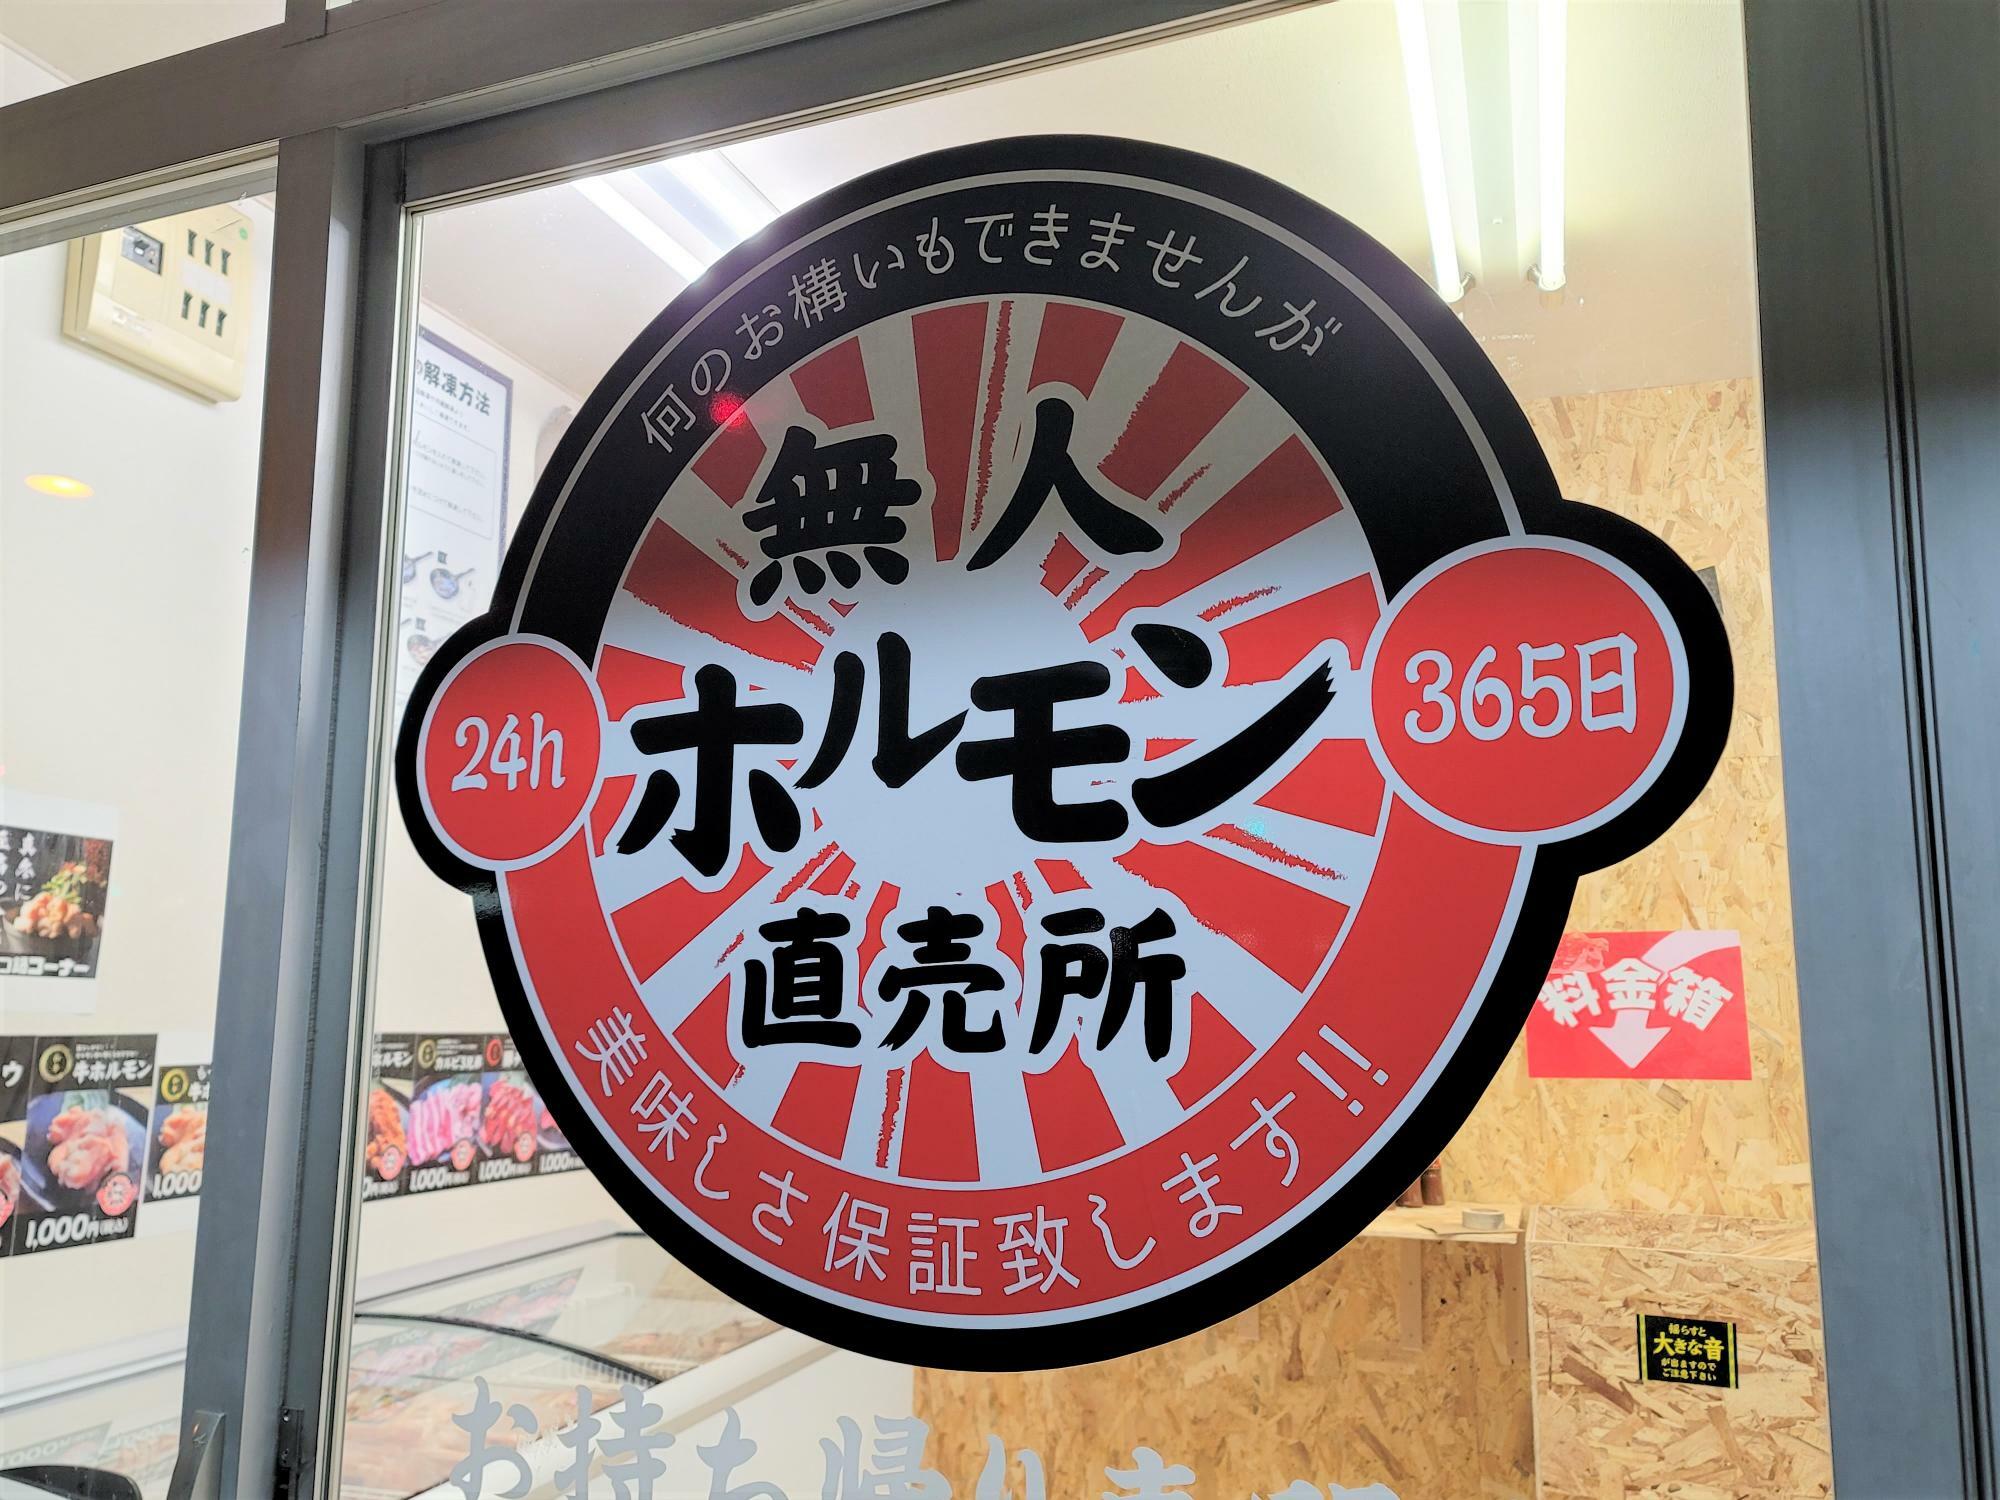 「24h 無人ホルモン直売所 徳島吉野本町店」の店舗出入口。